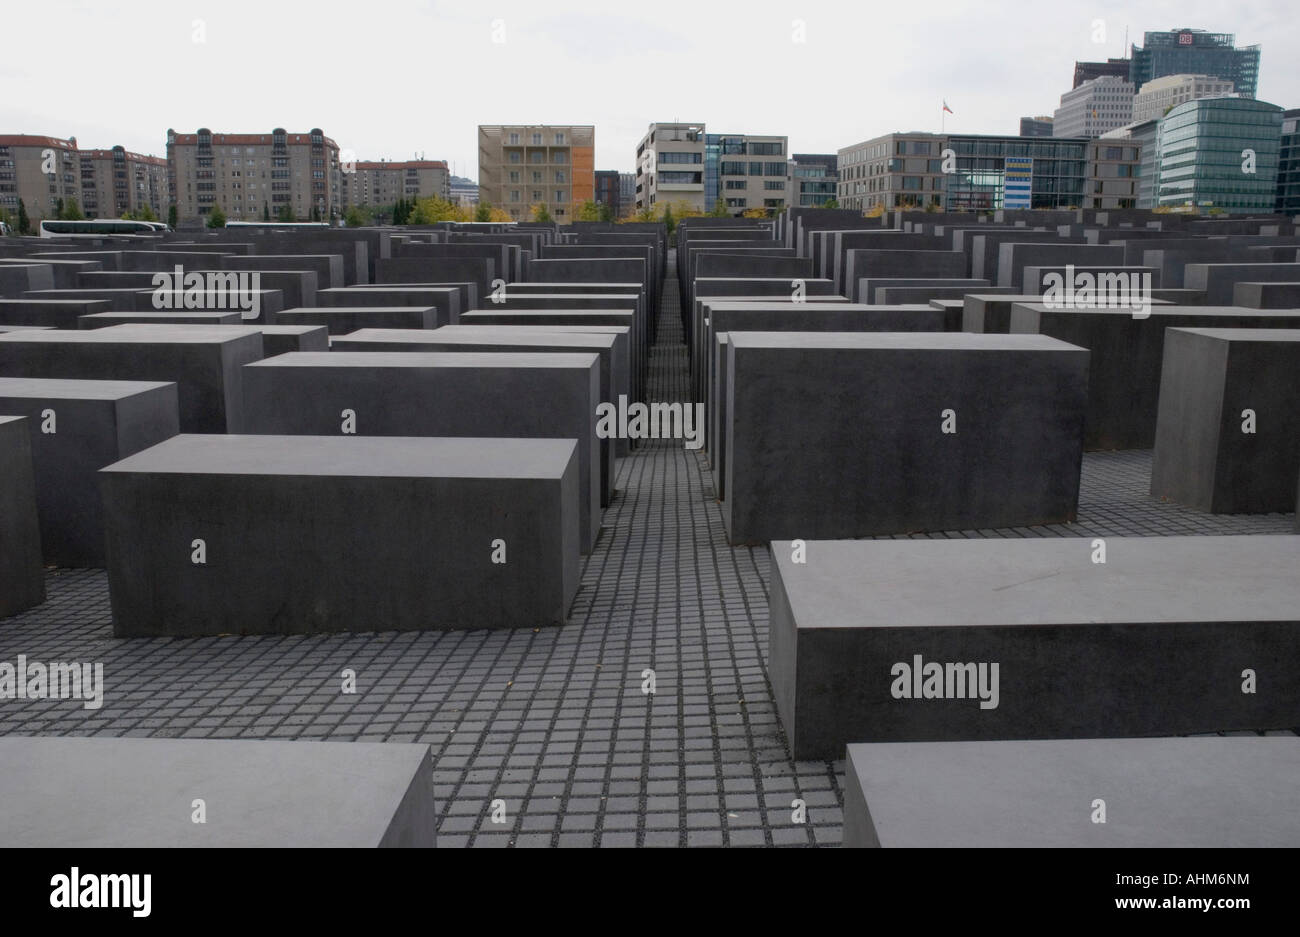 Monumento conmemorativo en recuerdo al holocausto judio.berlin.alemania.germany Stock Photo